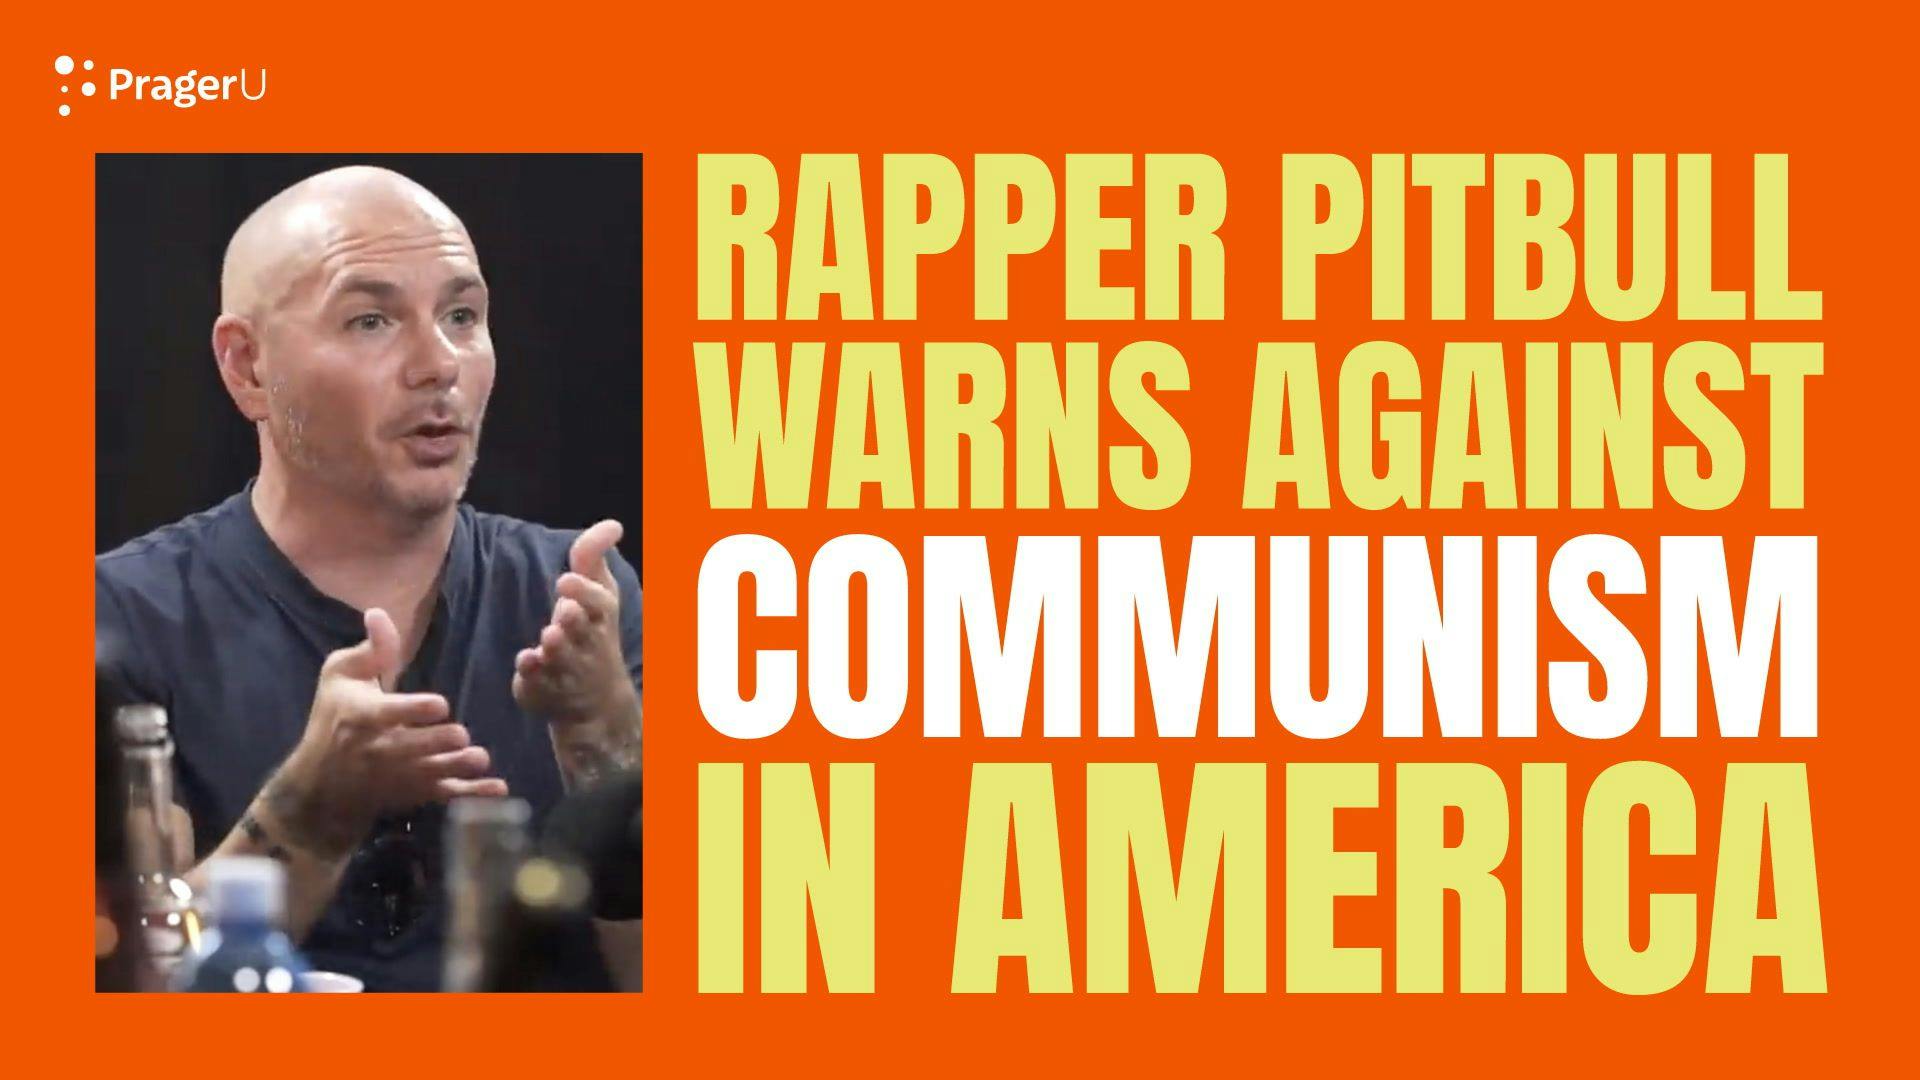 Rapper Pitbull Warns About Communism in America